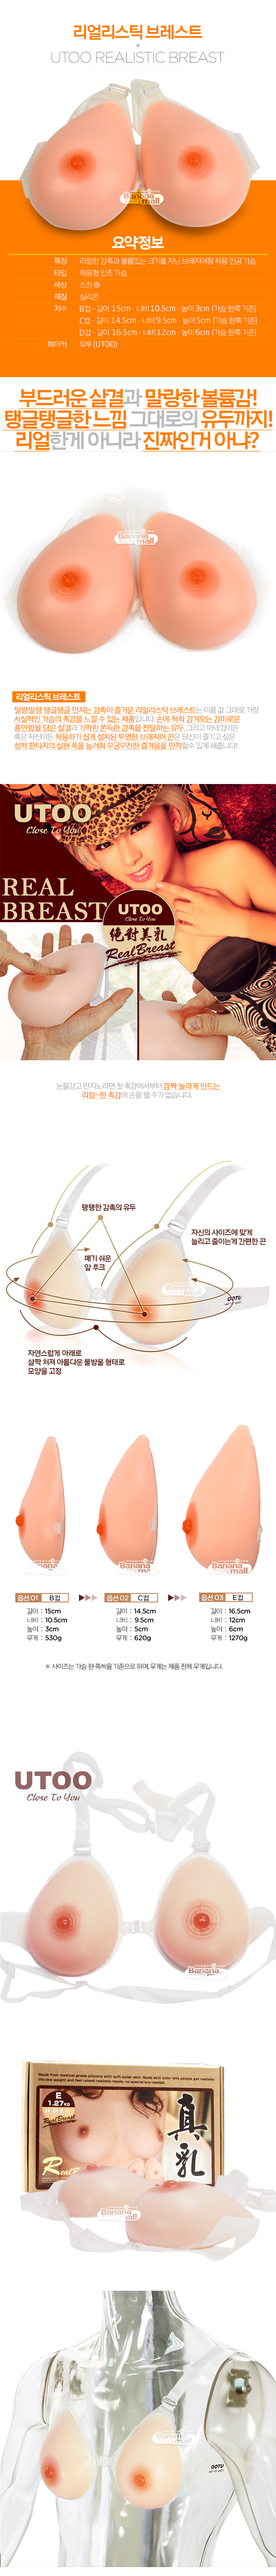 [착용형 가슴] 리얼리스틱 브레스트(UTOO Realistic Breast) - 유투